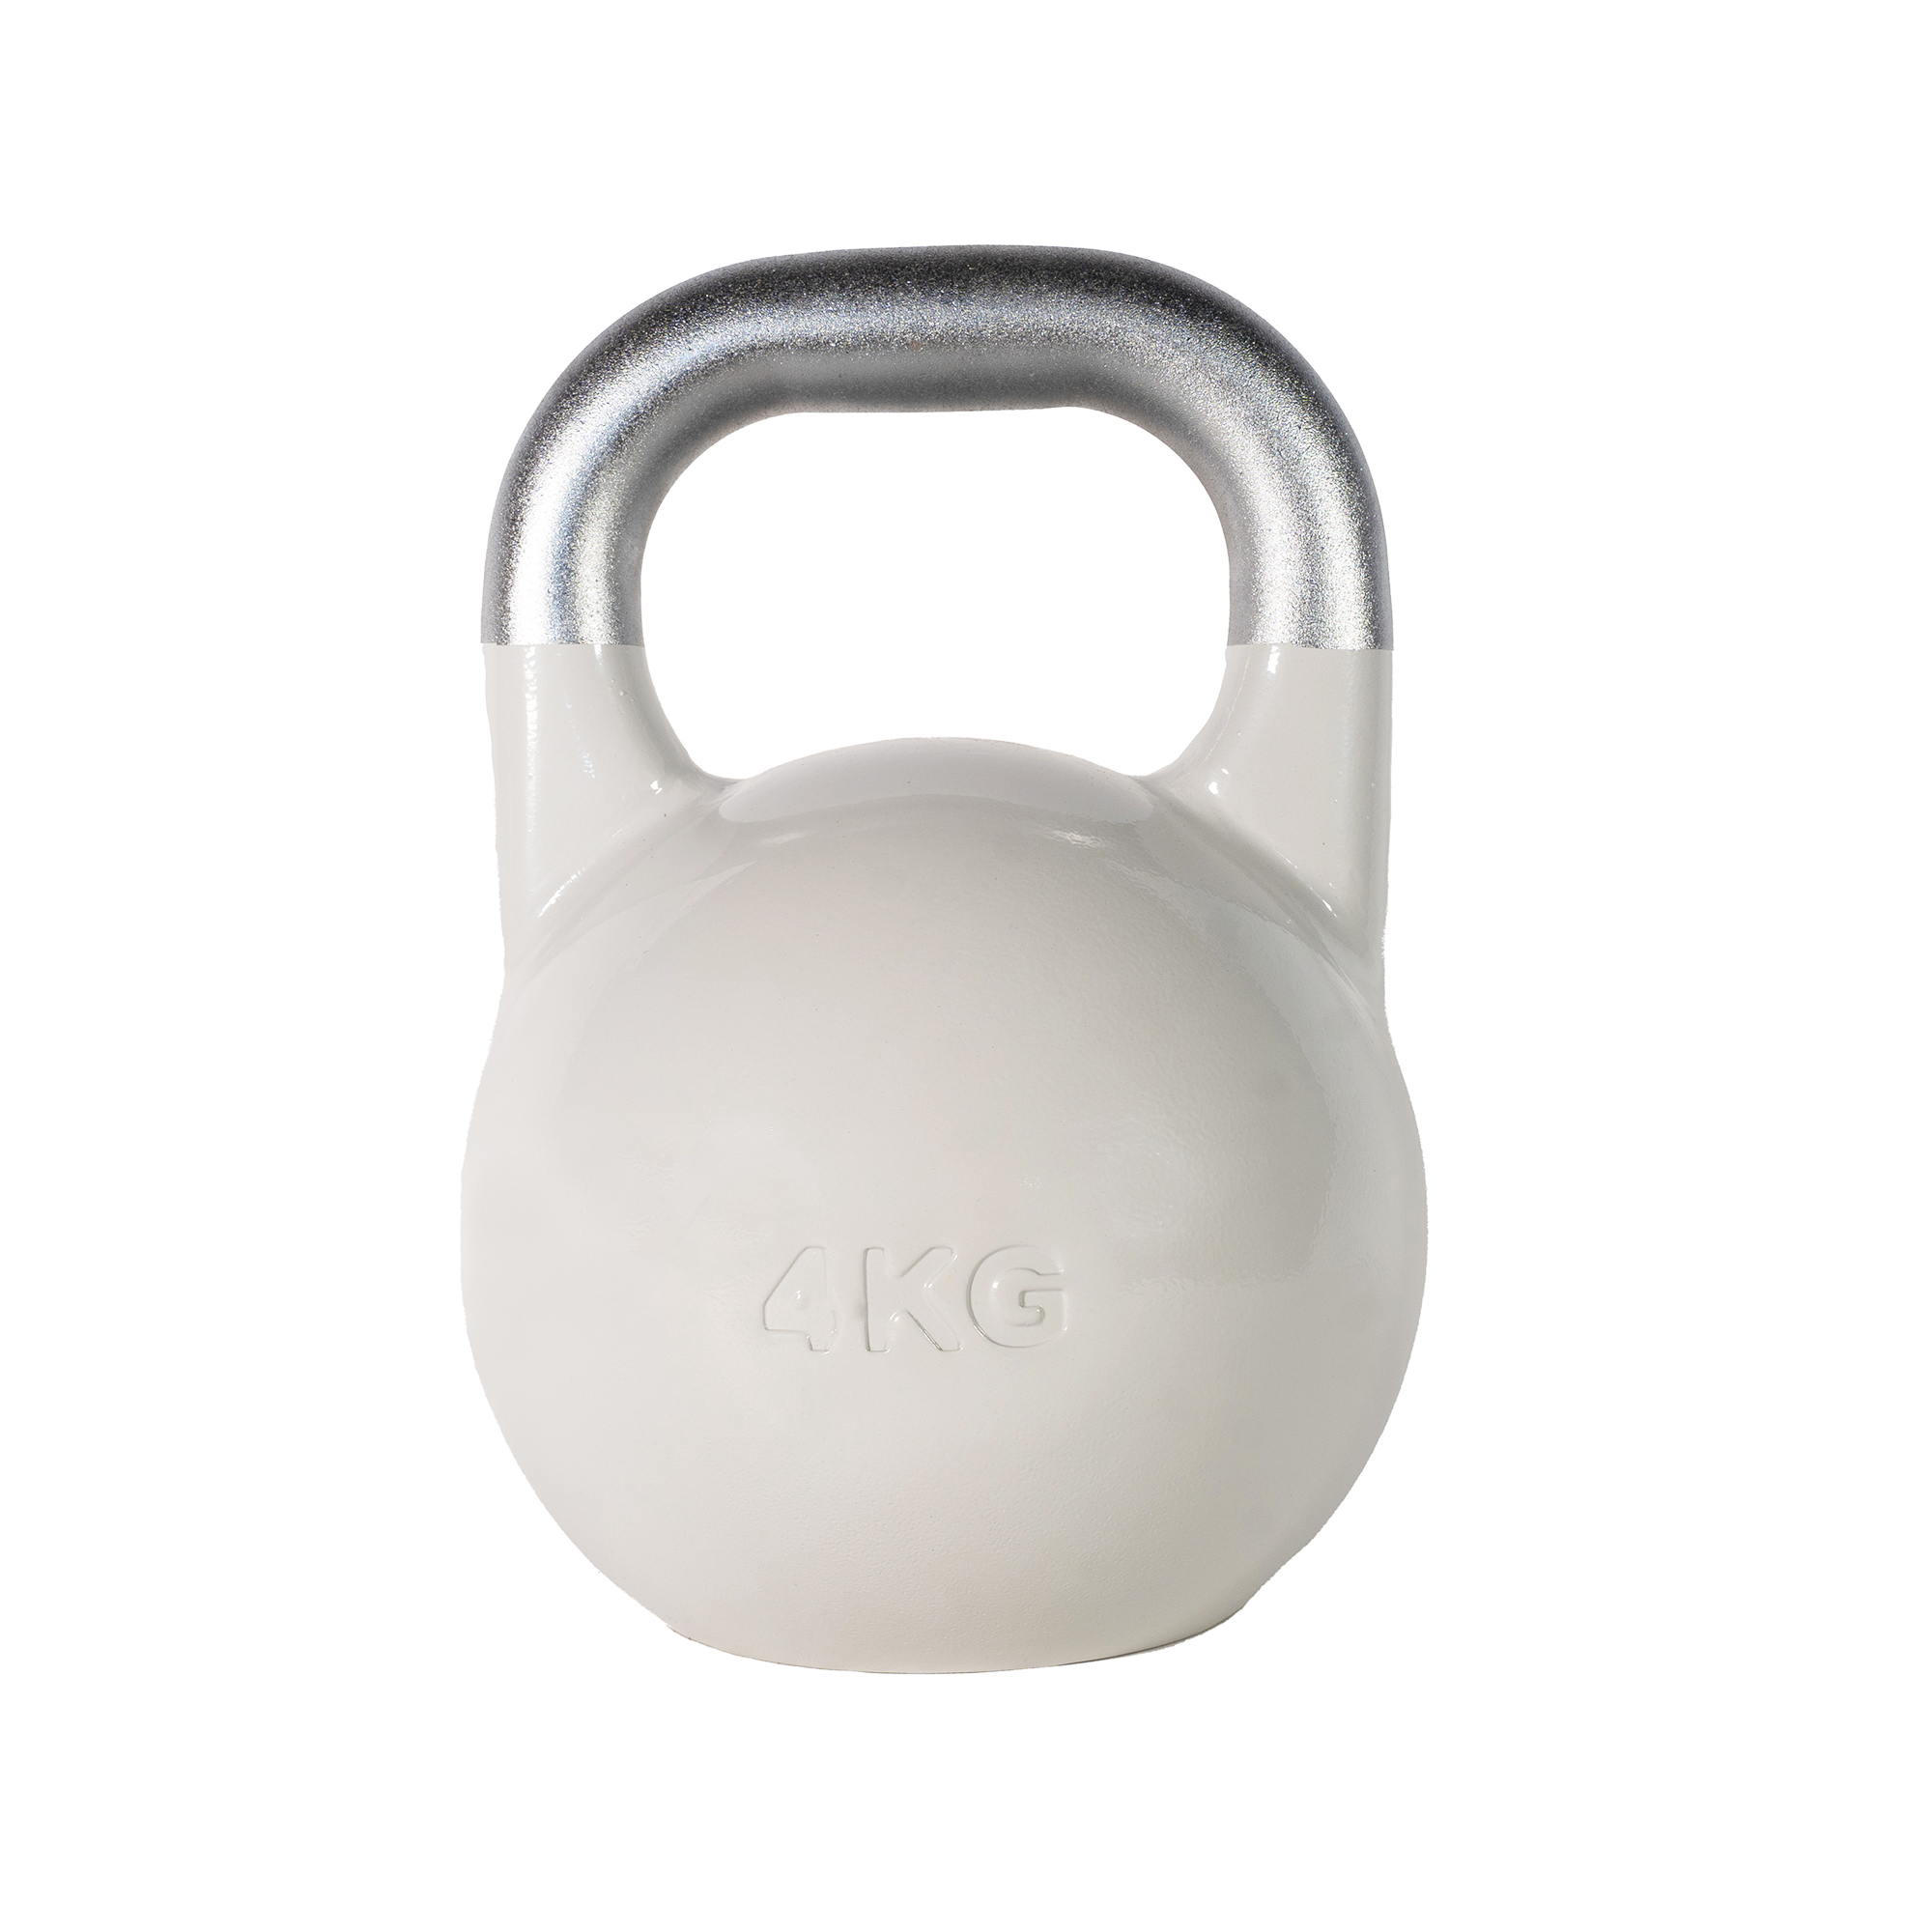 SQ&SN Competition Kettlebell (4 kg) i støbejern. Udstyr til crossfit træning, styrketræning og funktionel træning thumbnail